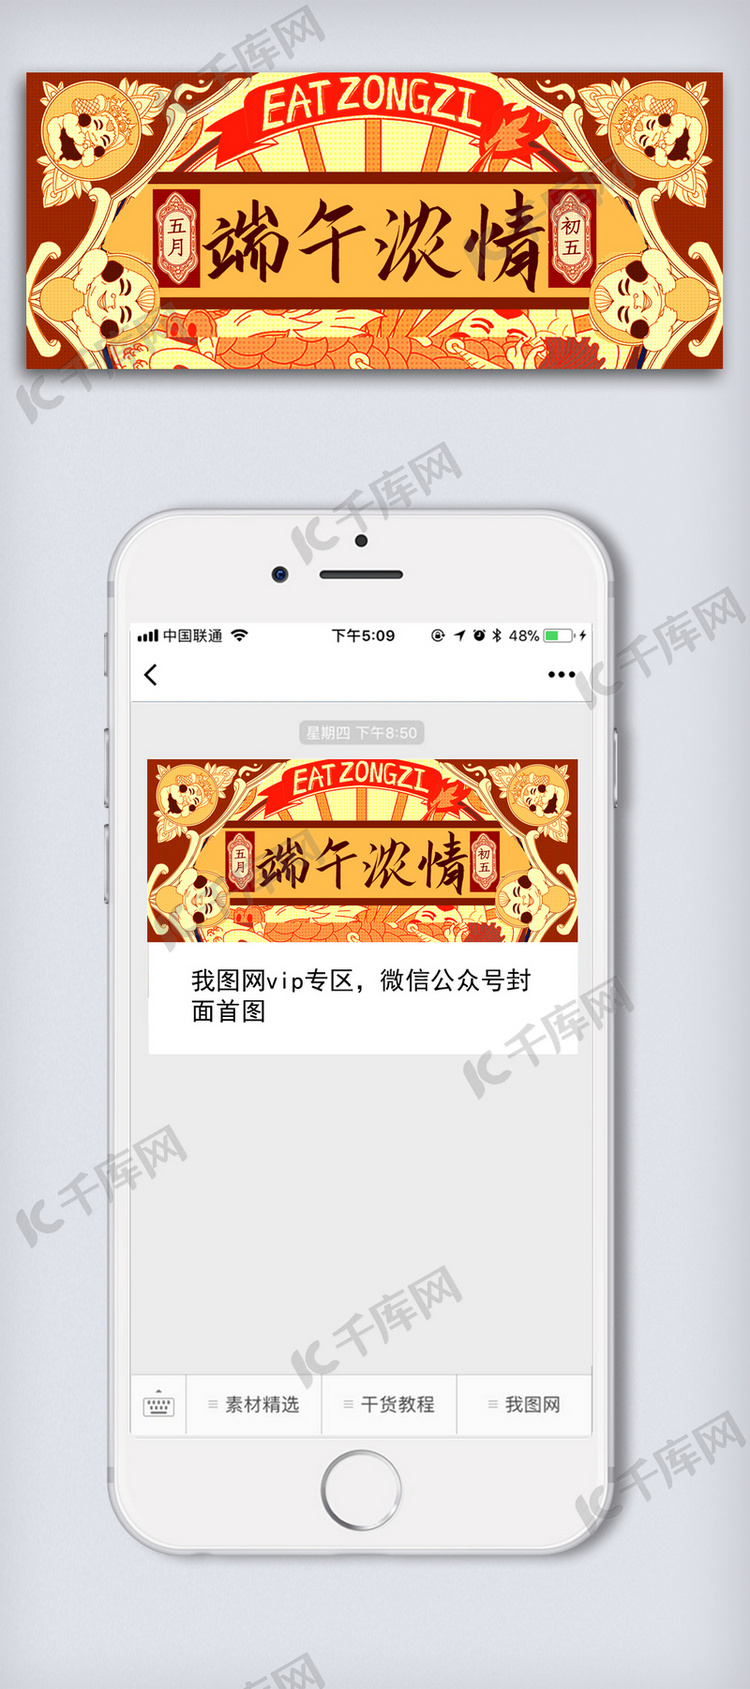 端午节赛龙舟传统文化节日民俗海报背景模板